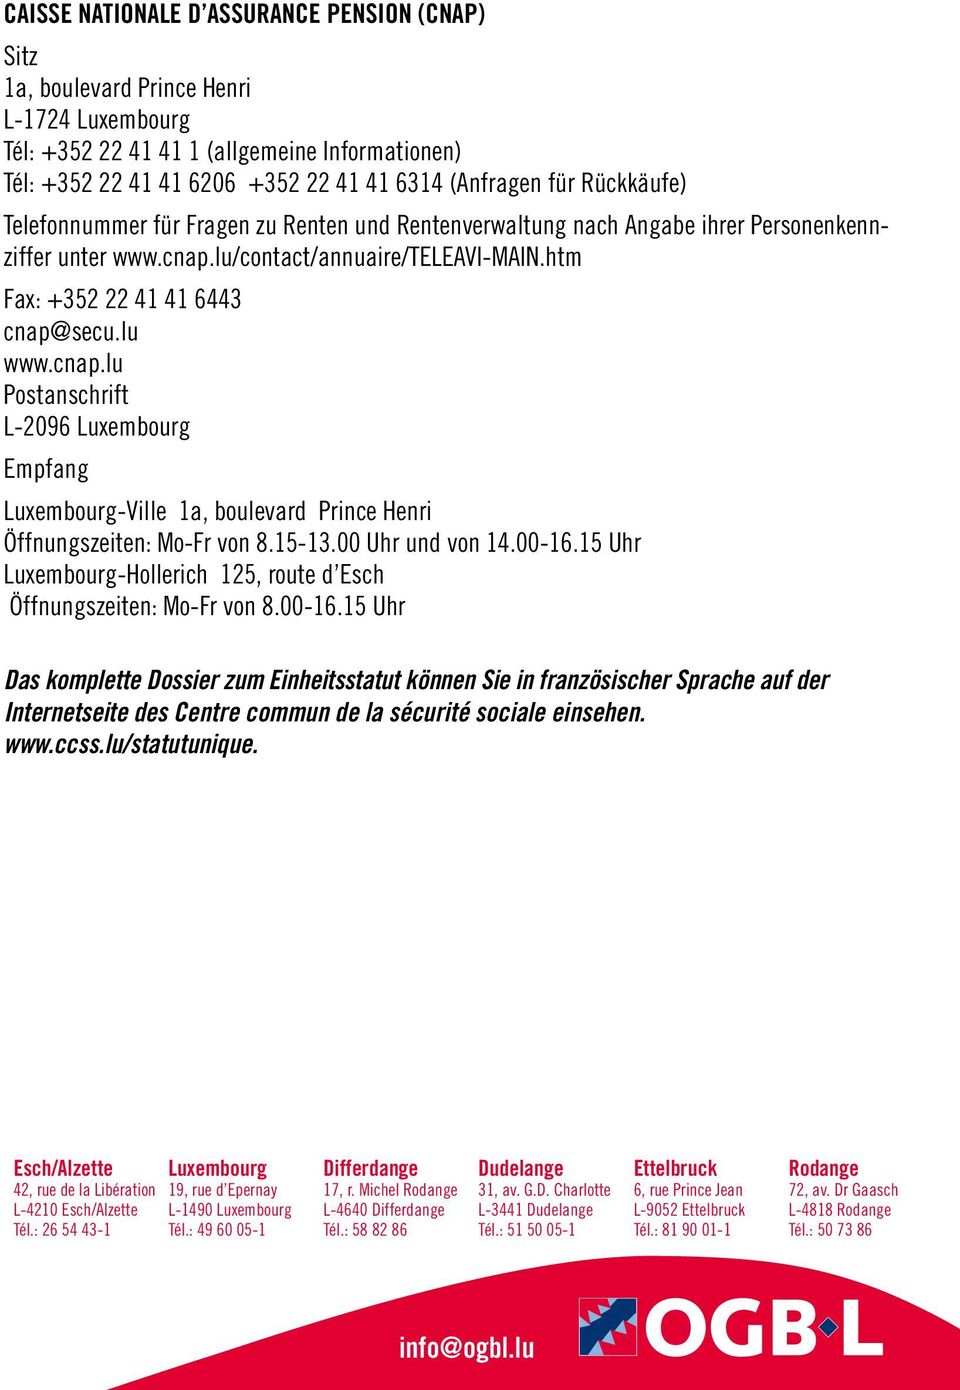 cnap.lu Postanschrift L-2096 Luxembourg Empfang Luxembourg-Ville 1a, boulevard Prince Henri Öffnungszeiten: Mo-Fr von 8.15-13.00 Uhr und von 14.00-16.